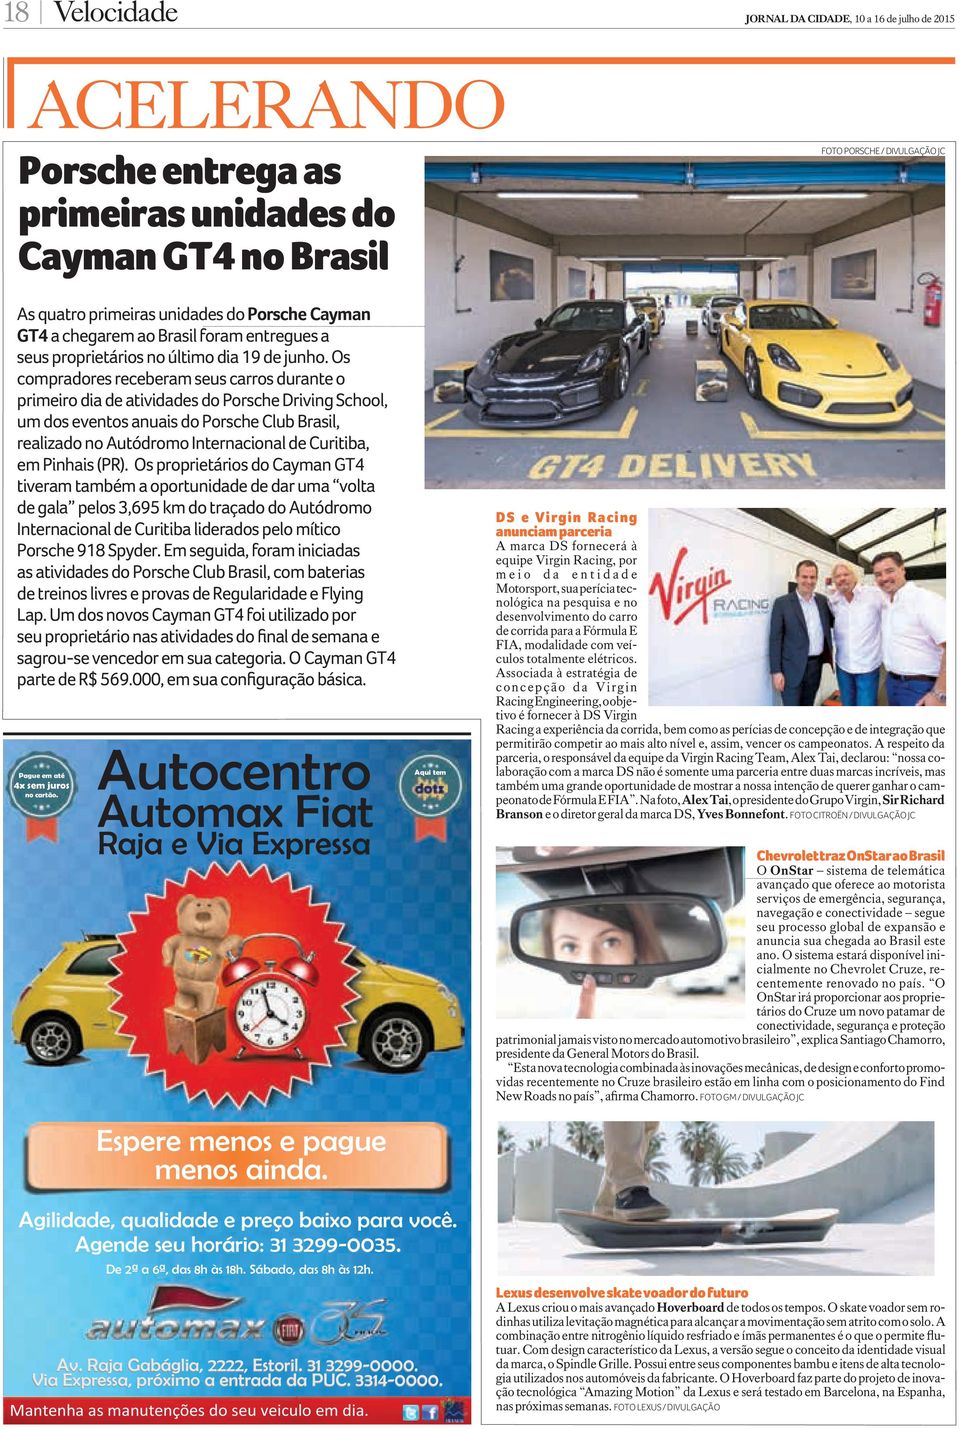 Os compradores receberam seus carros durante o primeiro dia de atividades do Porsche Driving School, um dos eventos anuais do Porsche Club Brasil, realizado no Autódromo Internacional de Curitiba, em